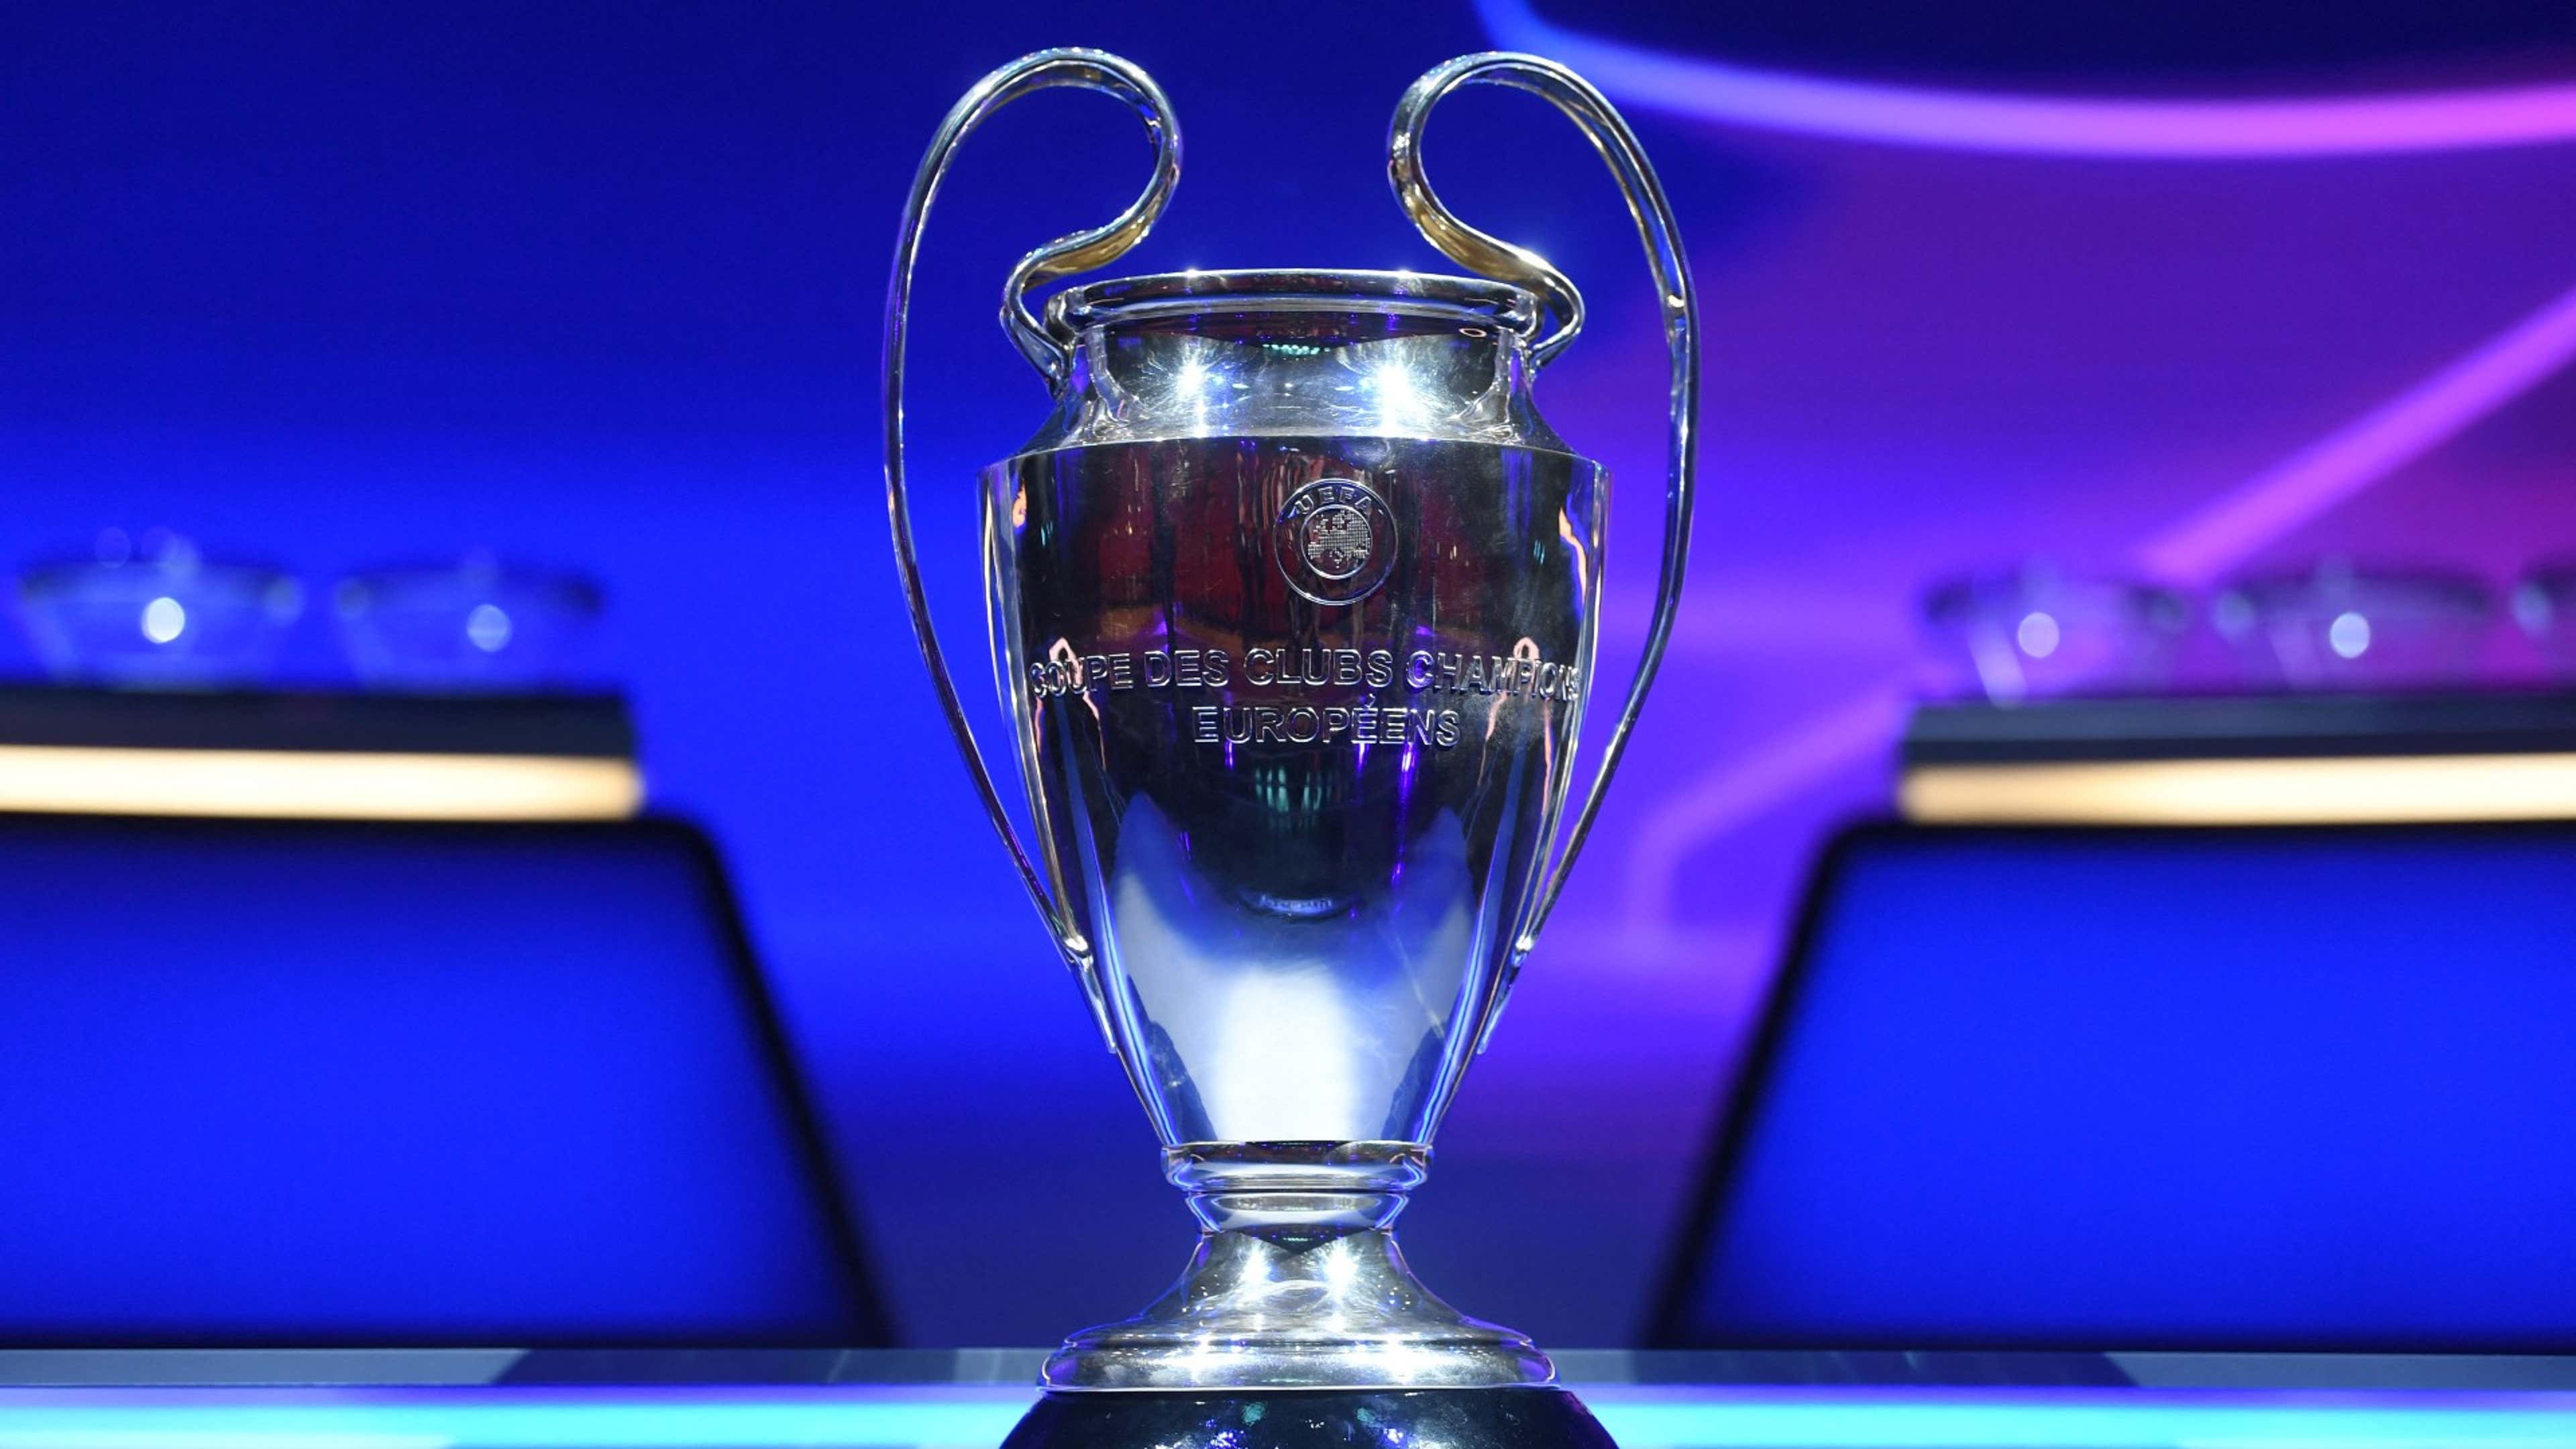 Quais os países com mais vencedores da Champions League?, UEFA Champions  League